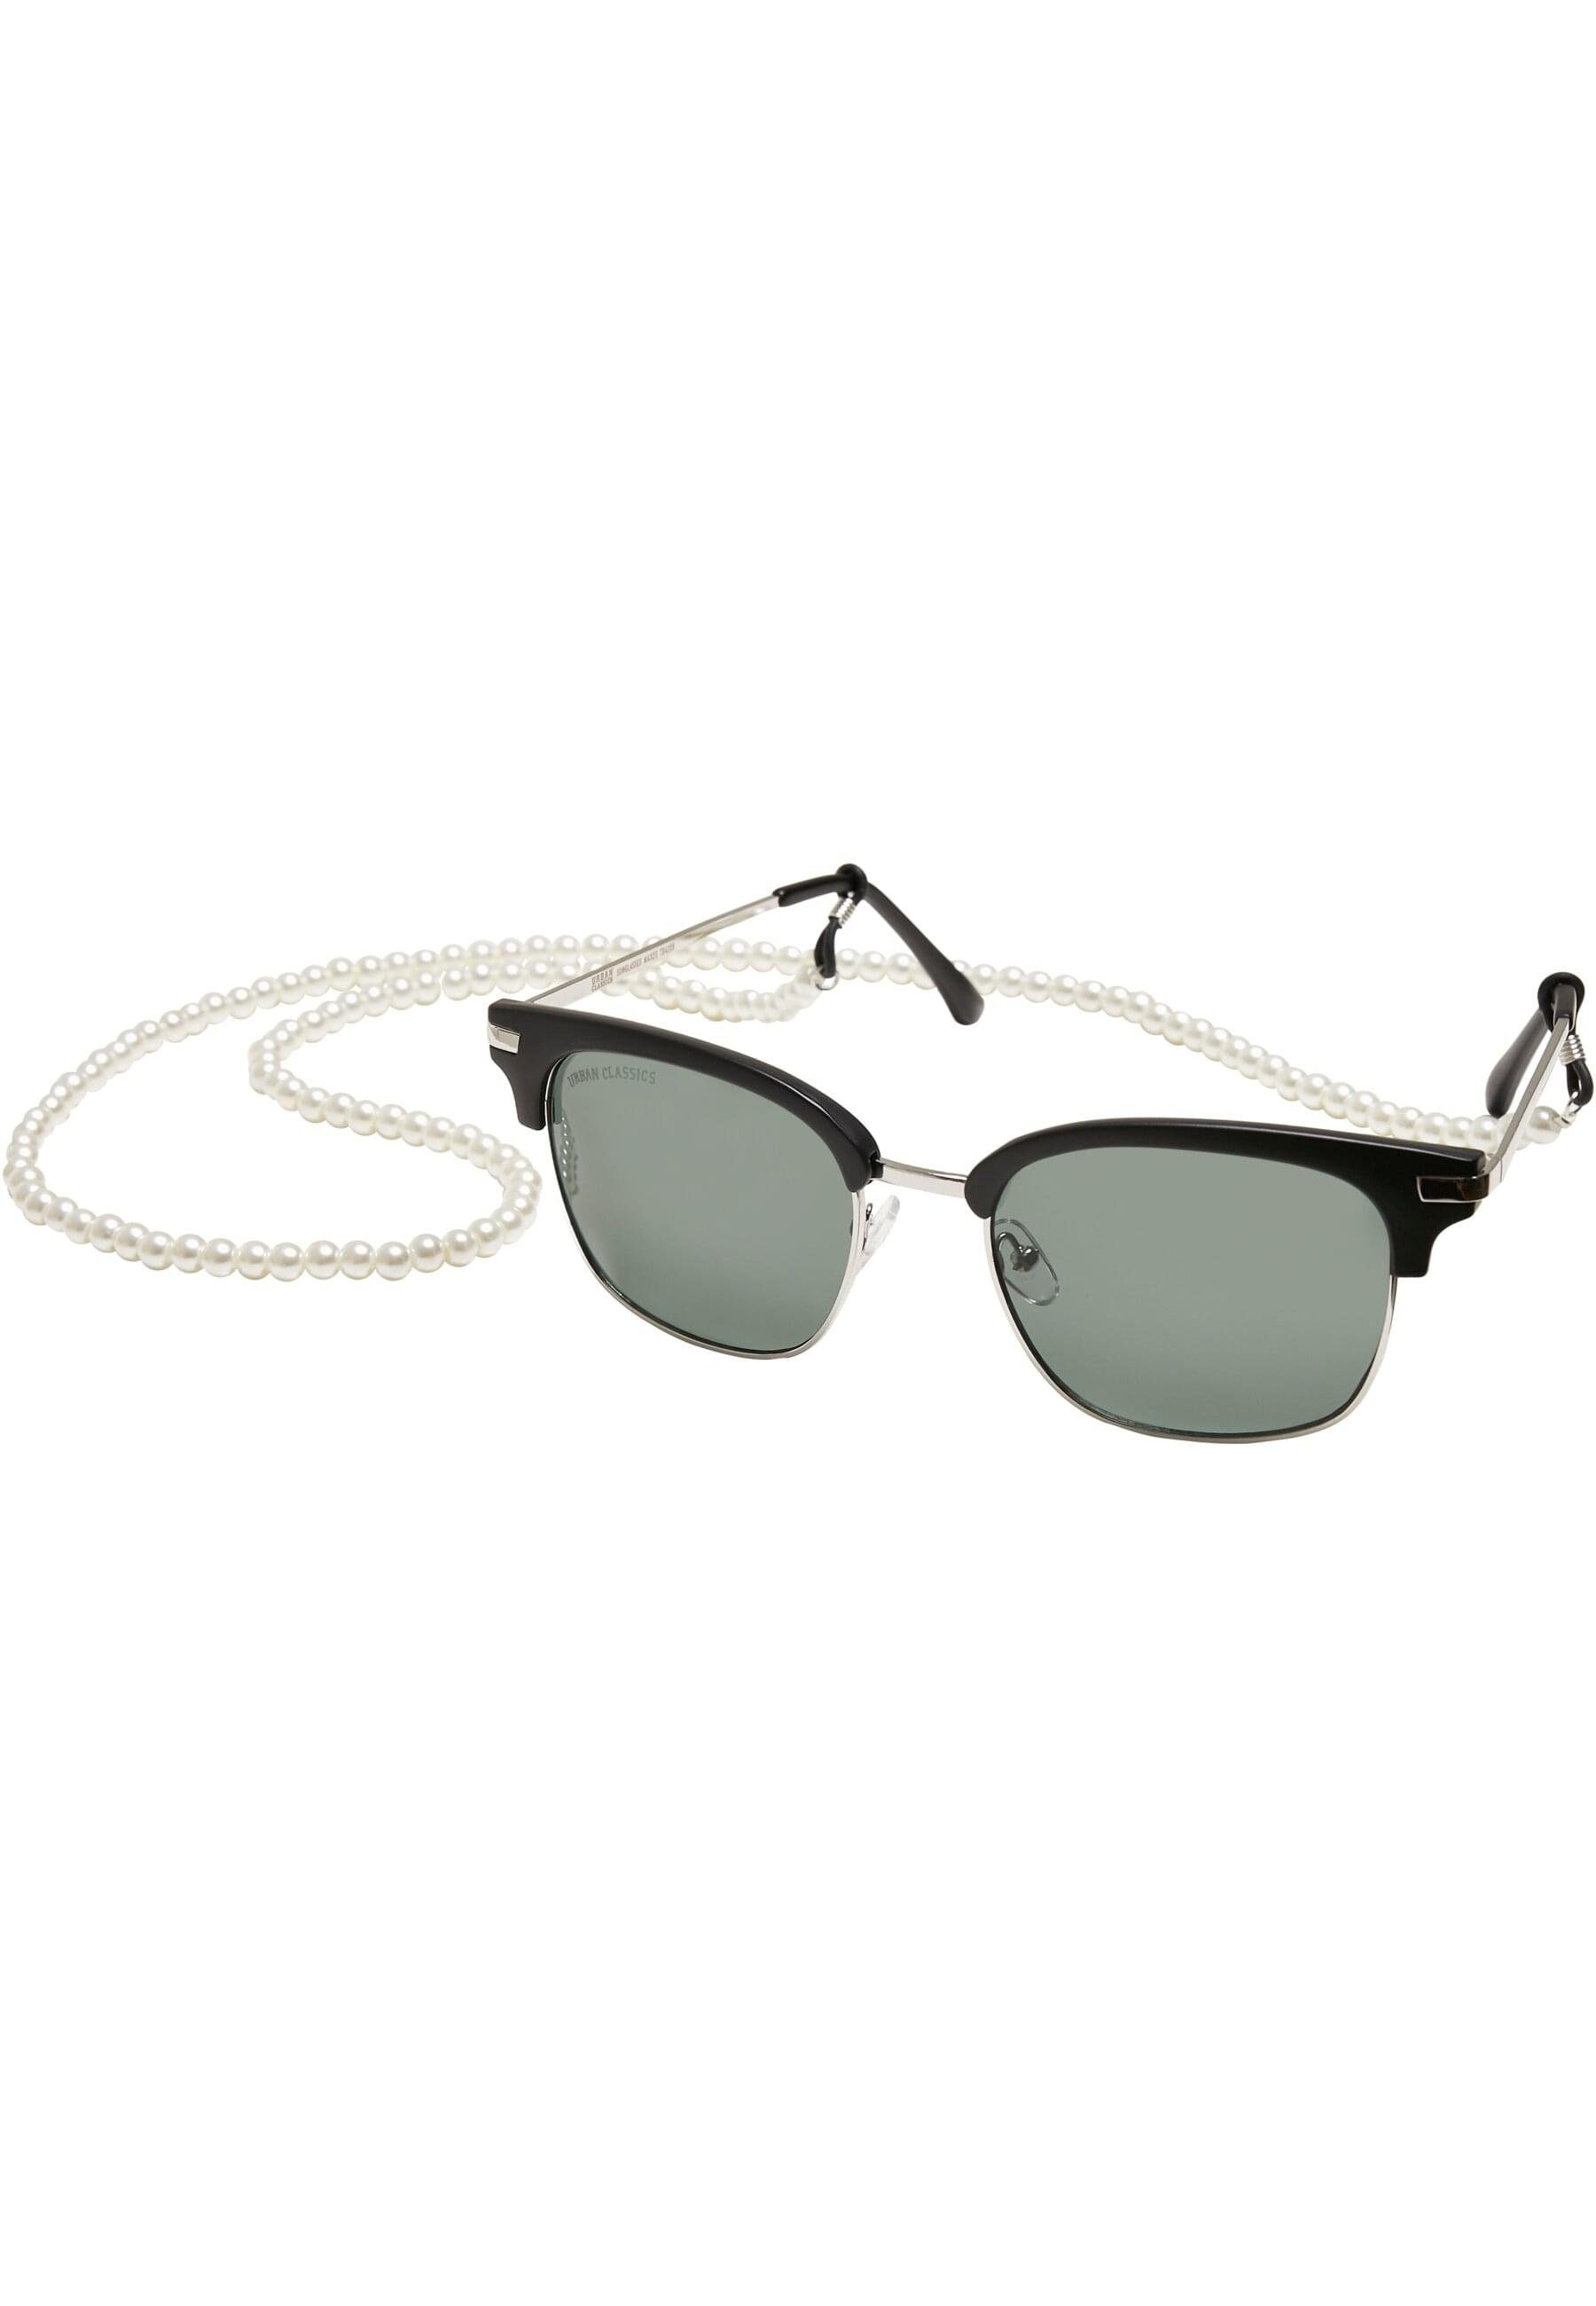 URBAN CLASSICS Crete Sunglasses Sonnenbrille With Chain Unisex